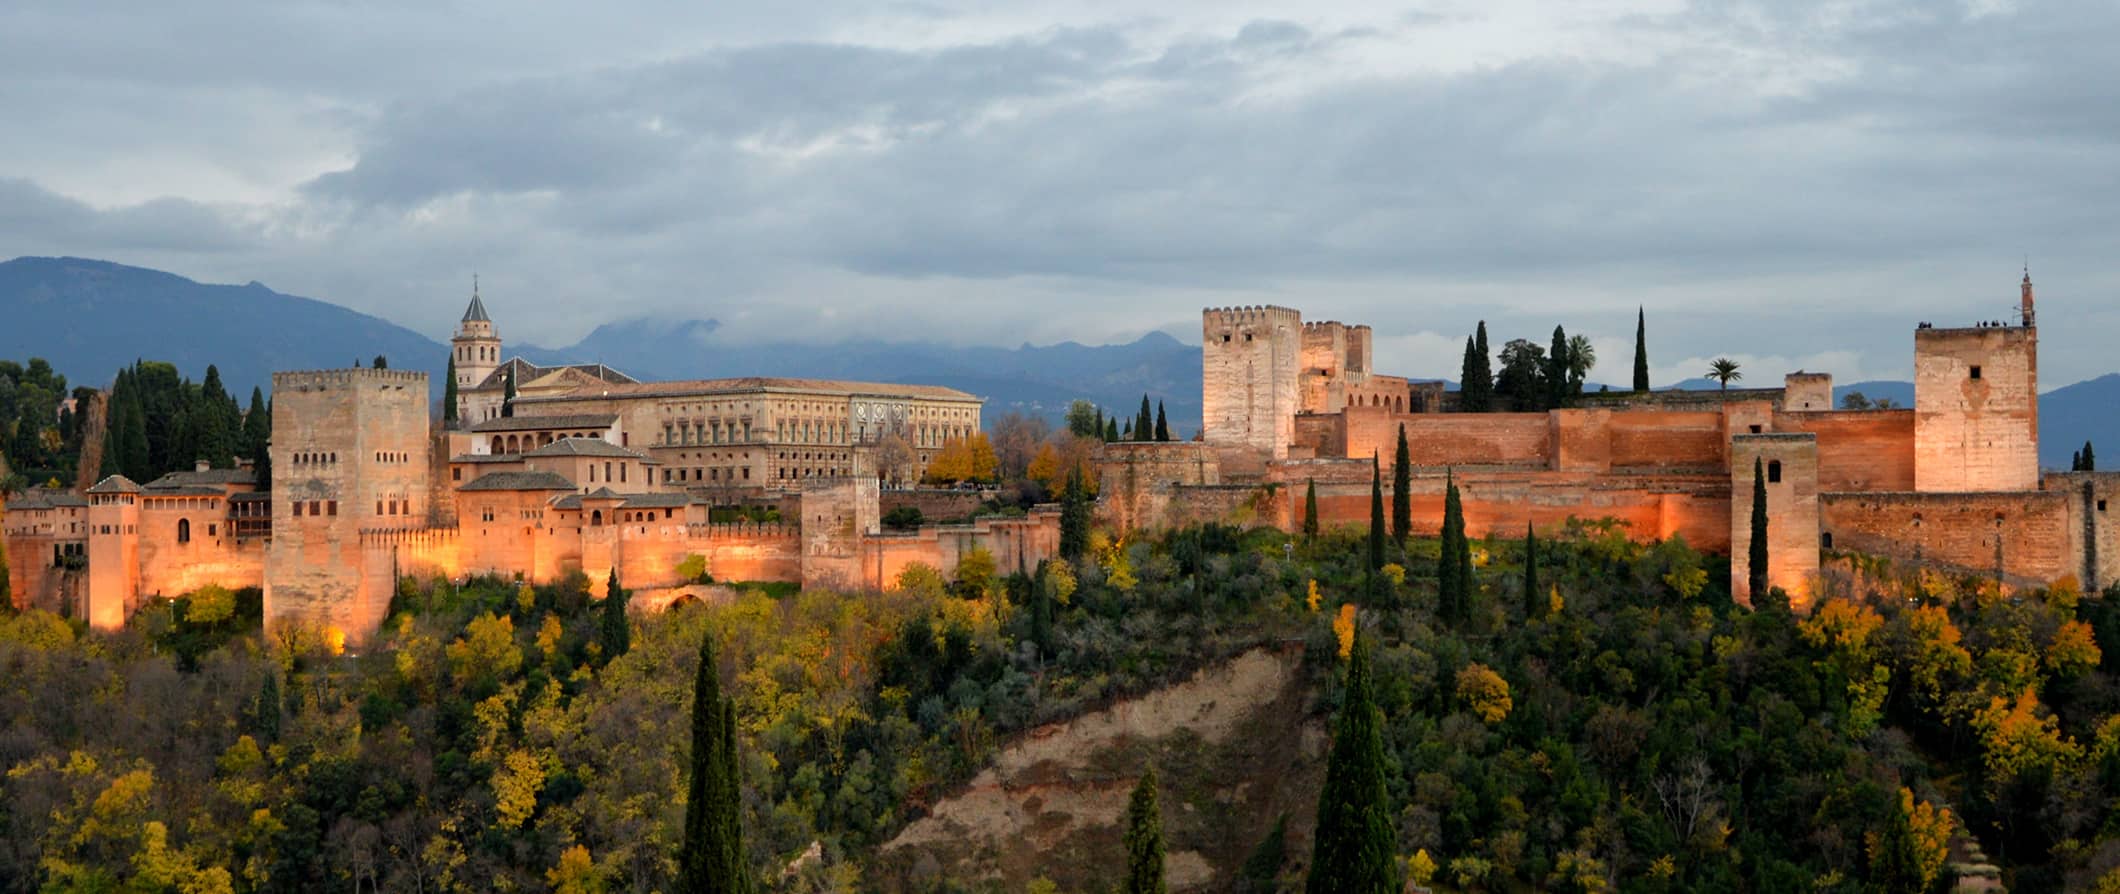 O famoso e histórico Palácio da Algambra em Granada, Espanha, cercado por vegetação